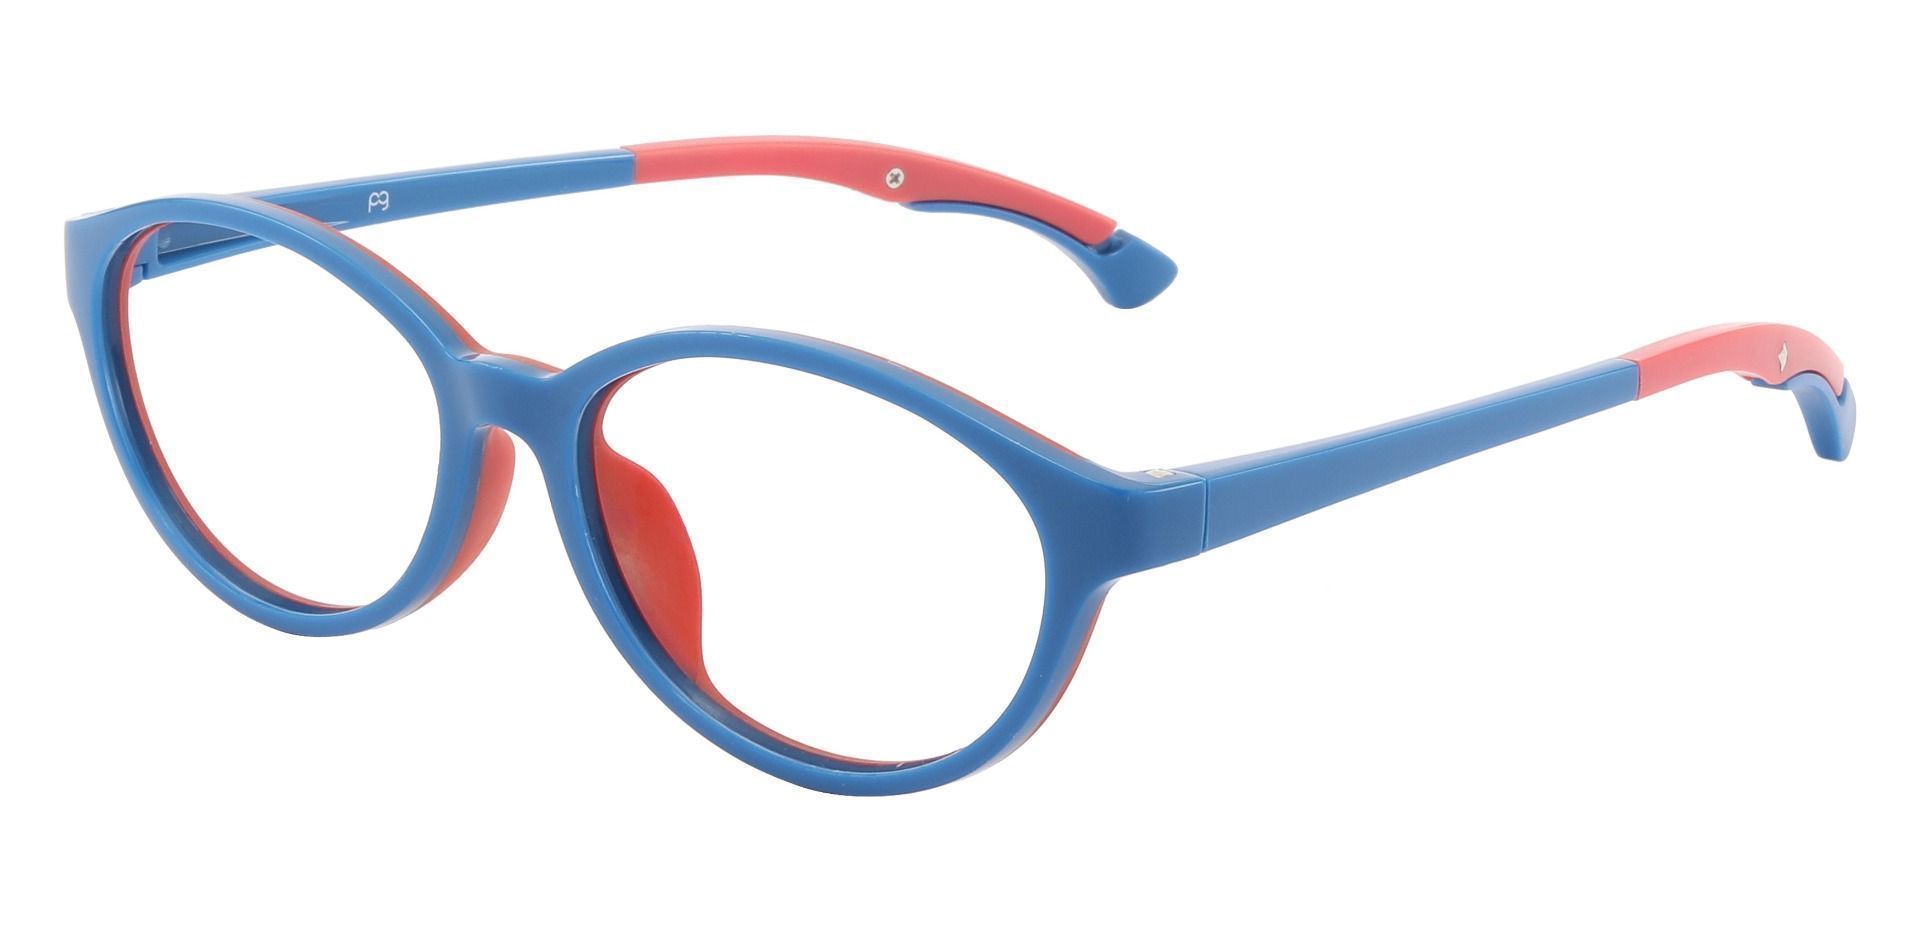 Desert Oval Prescription Glasses - Blue